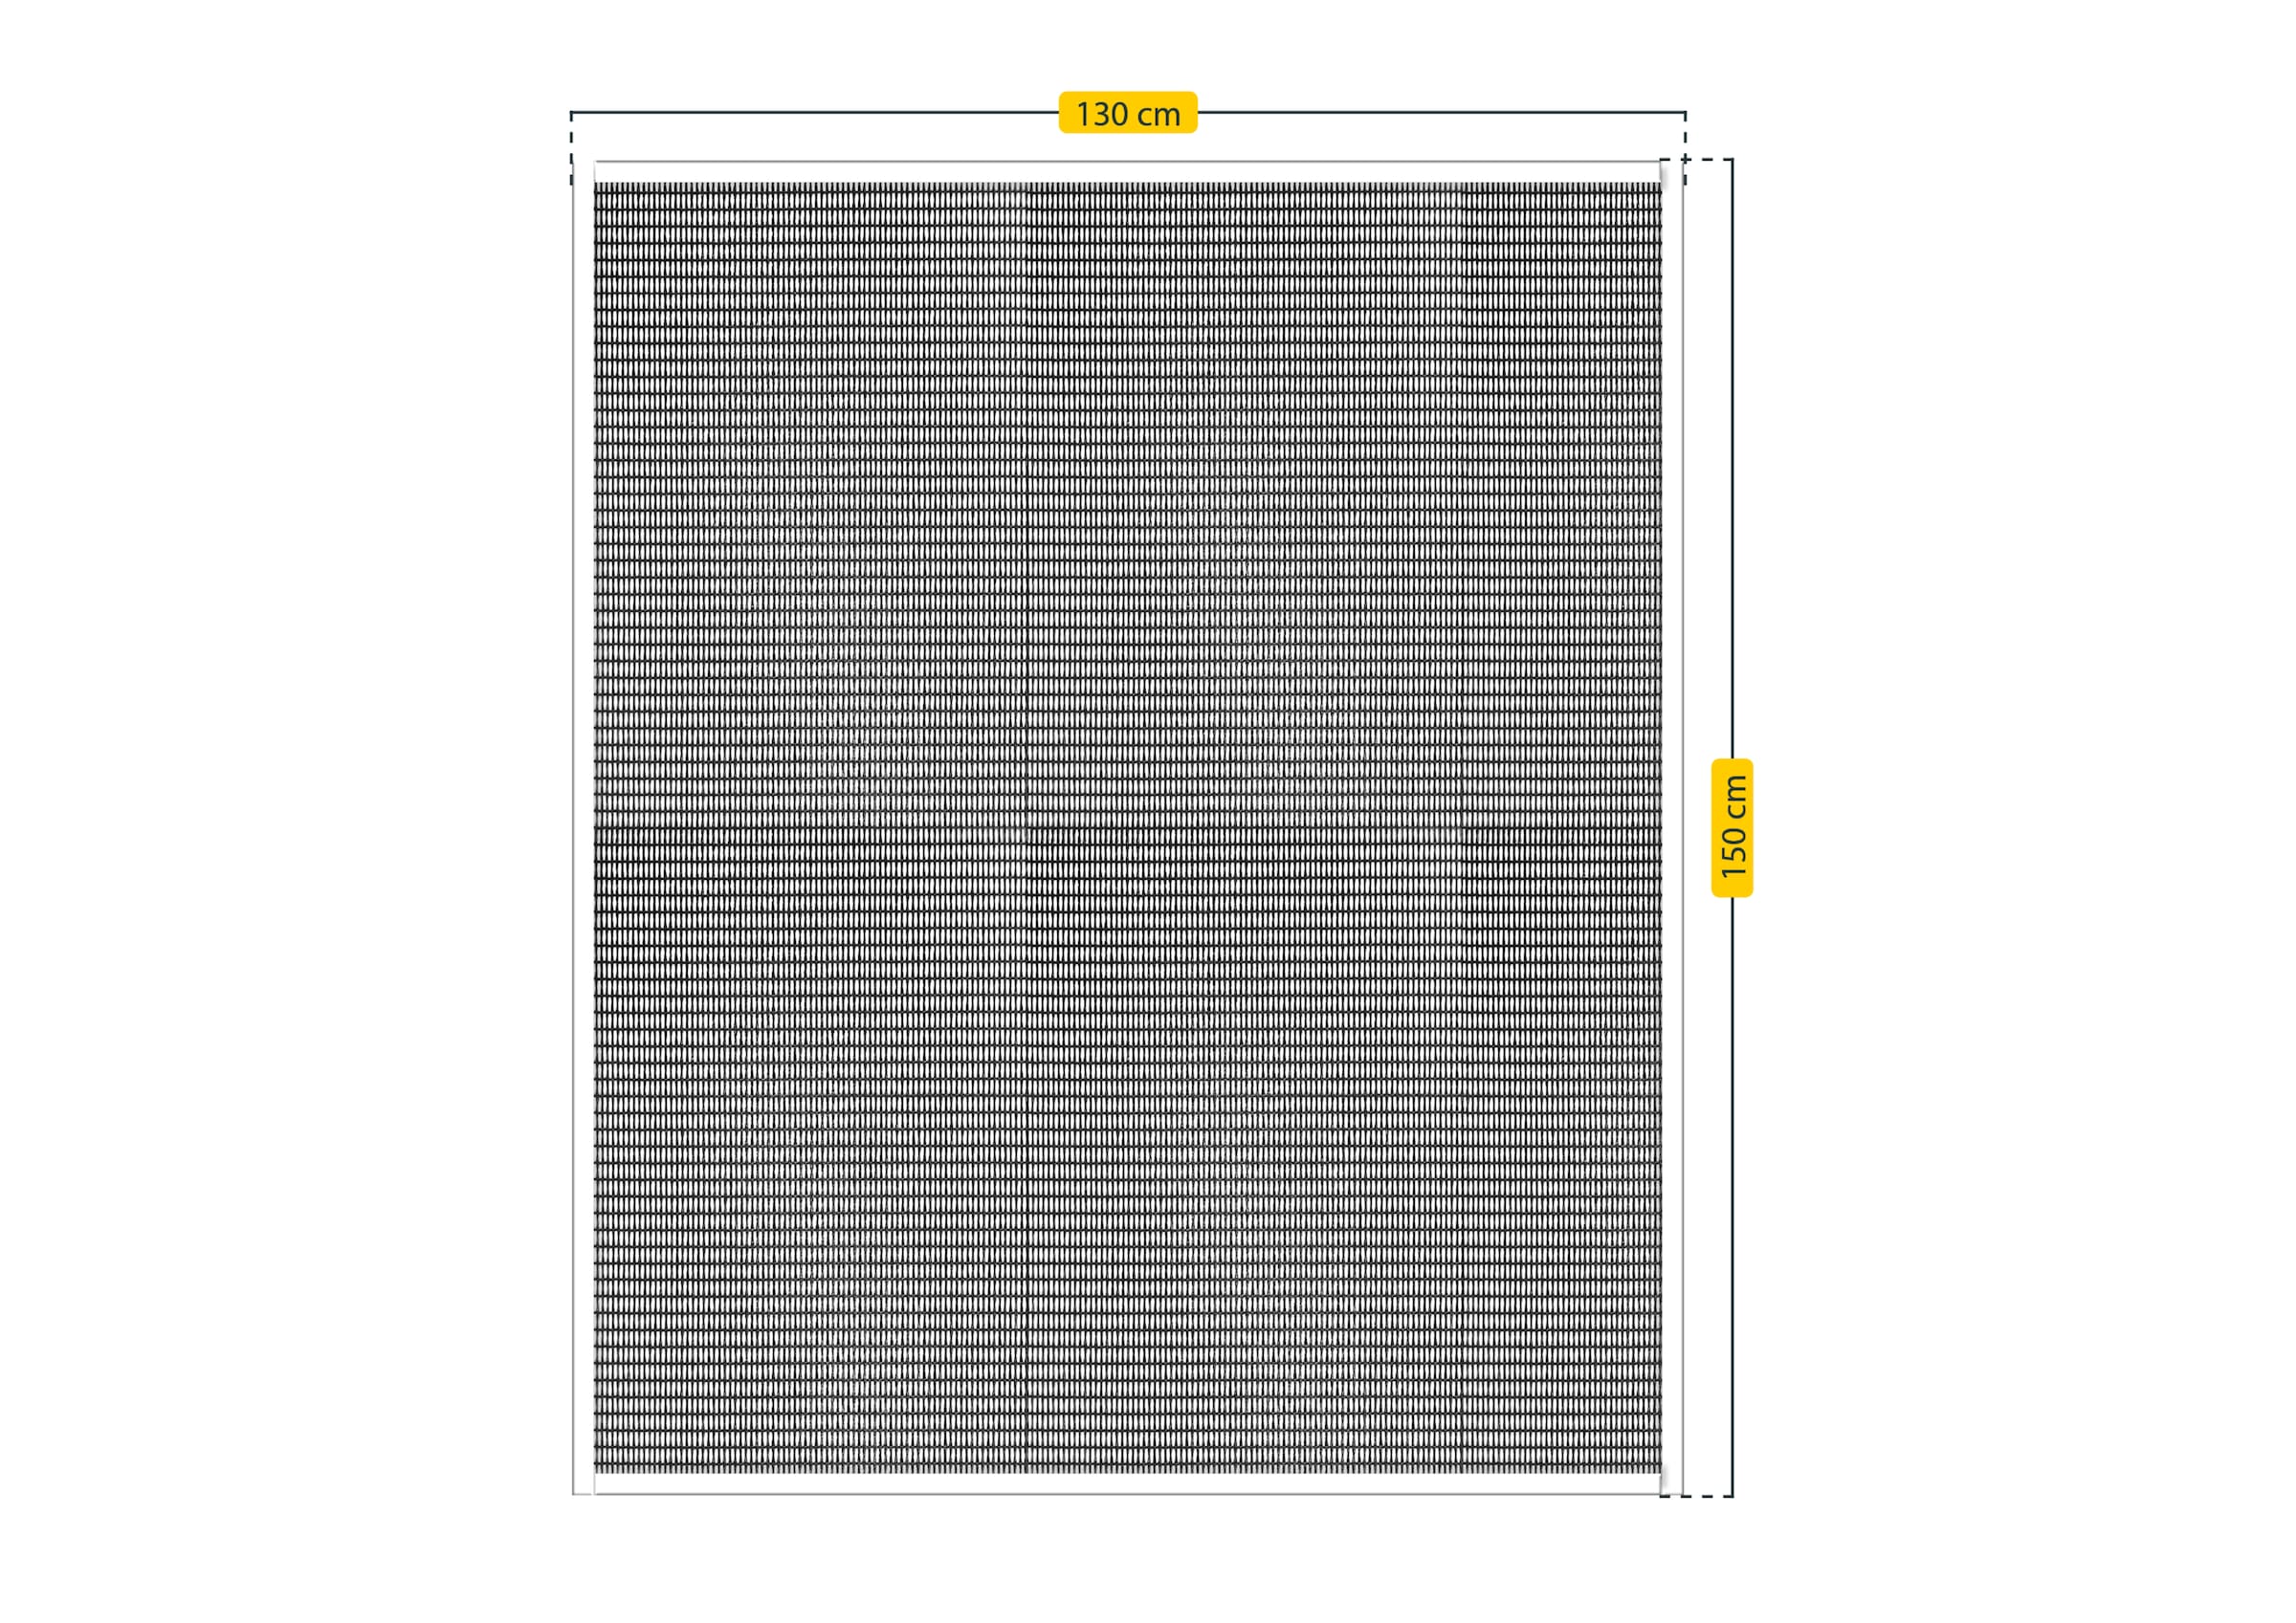 SCHELLENBERG Insektenschutz-Fensterrahmen »Easy Click für Fenster«, Fliegengitter Pollenschutz ohne bohren, 130 x 150 cm, anthrazit, 70475